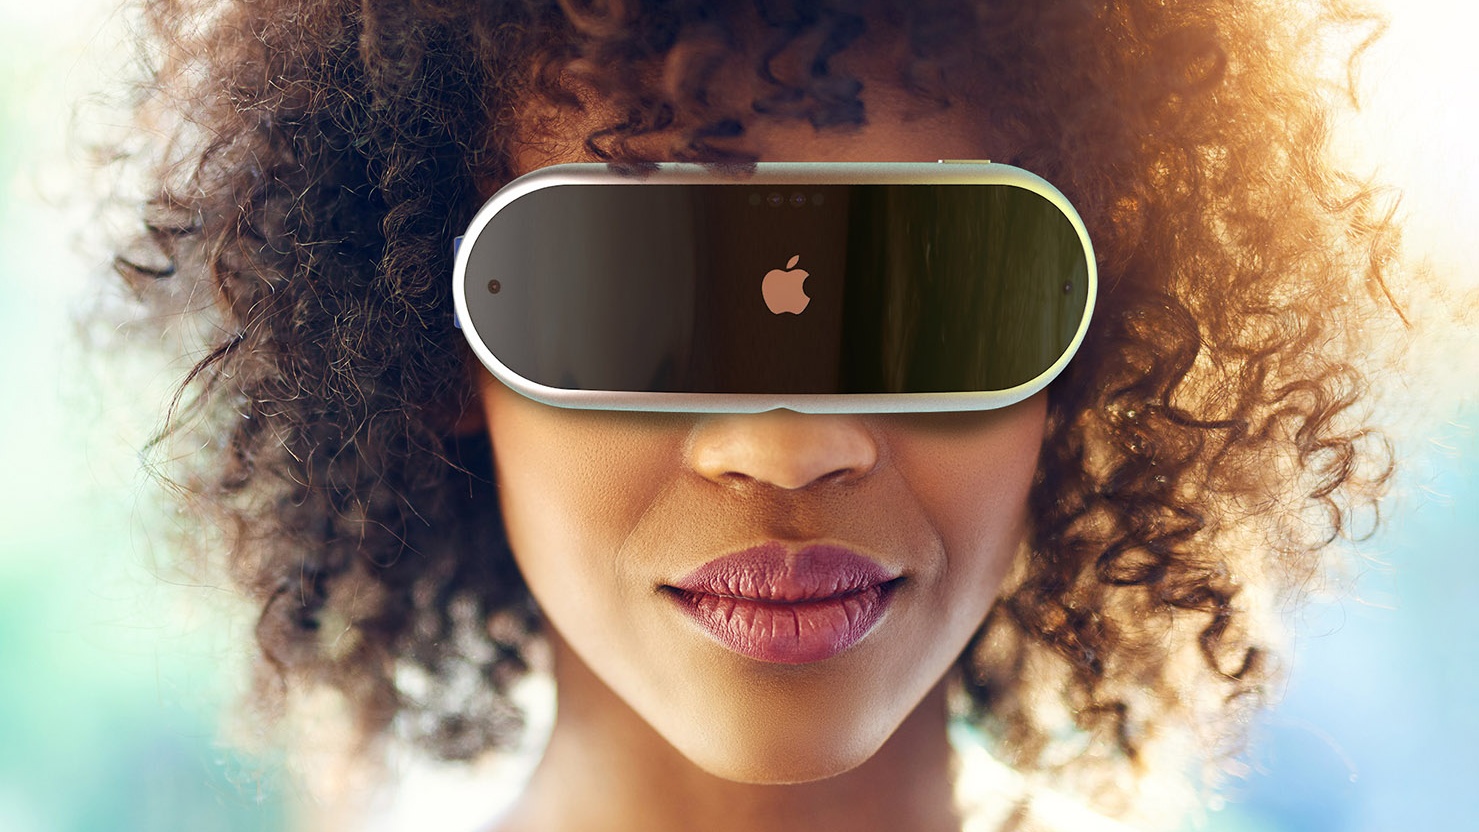 #Apple’s Mixed Reality Headset im Überblick: Gerüchte, Release, Preis und Features